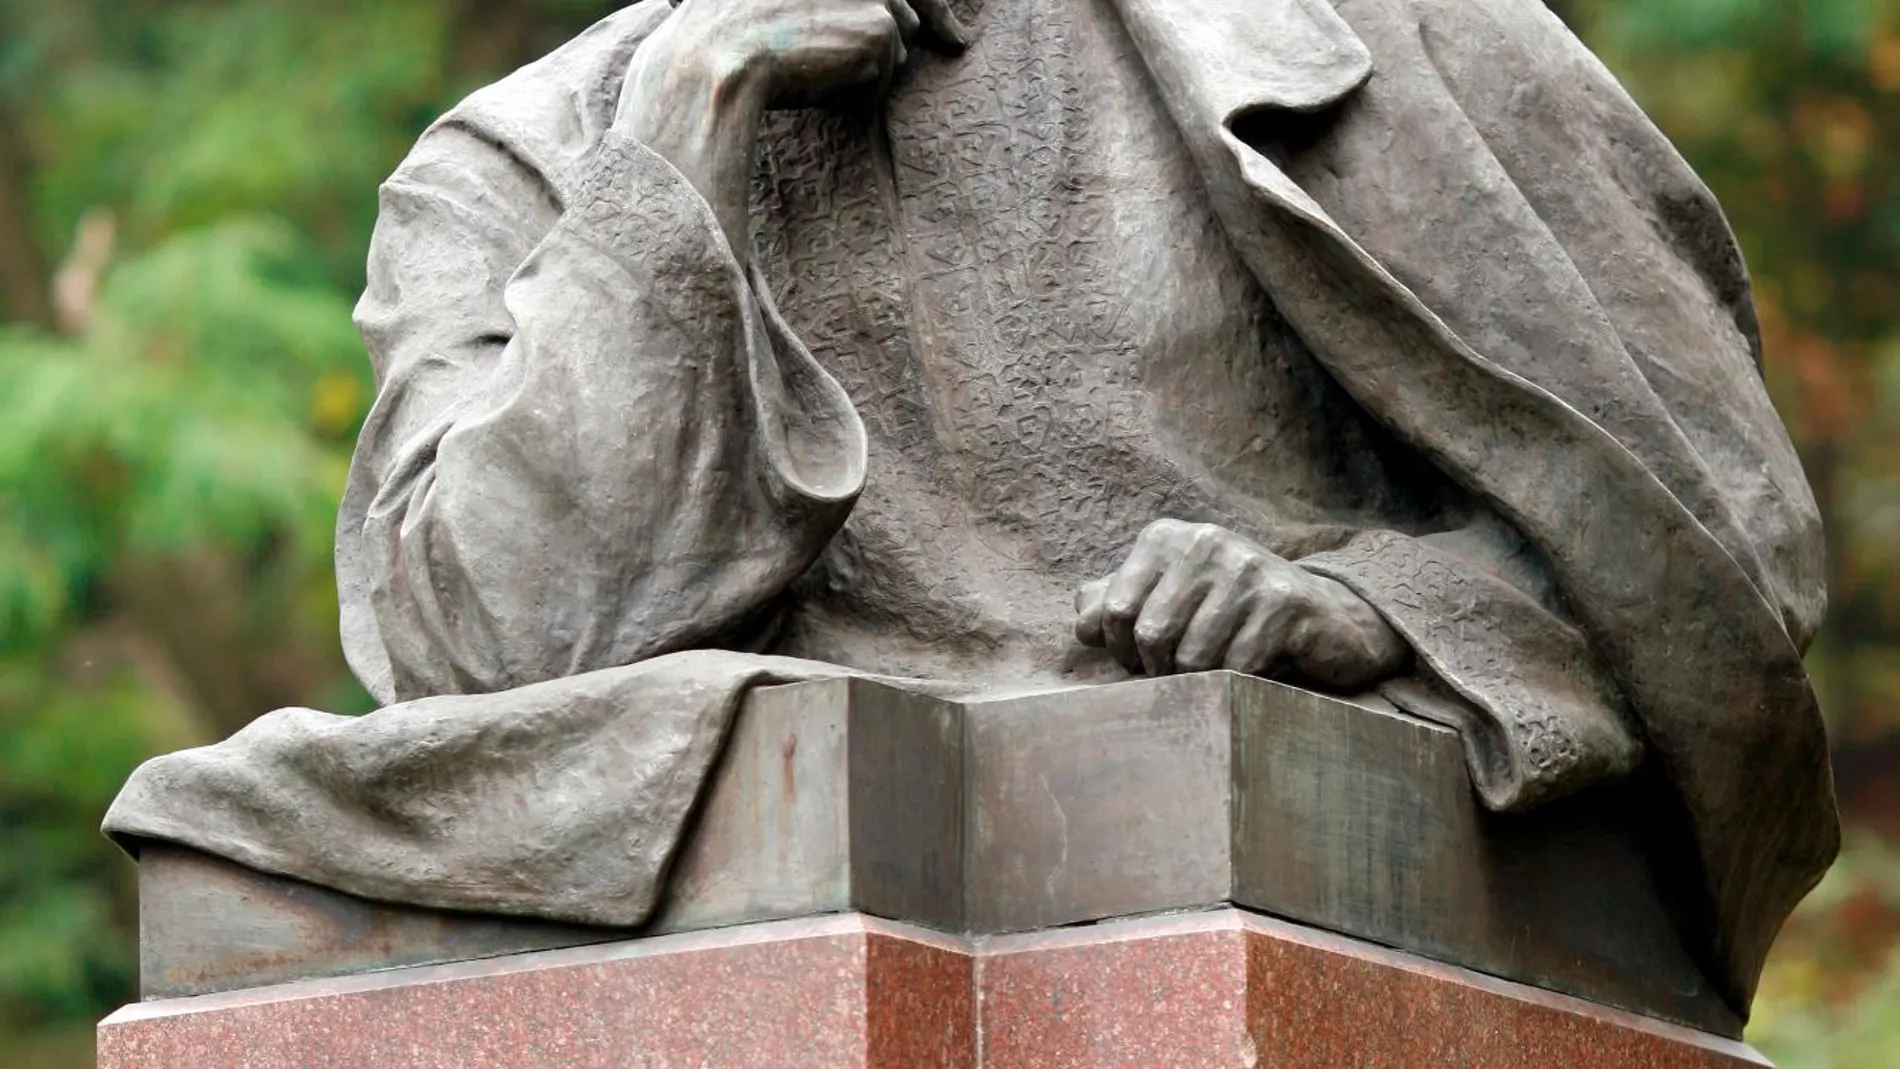 Monumento a Iván Frankó en Kiev